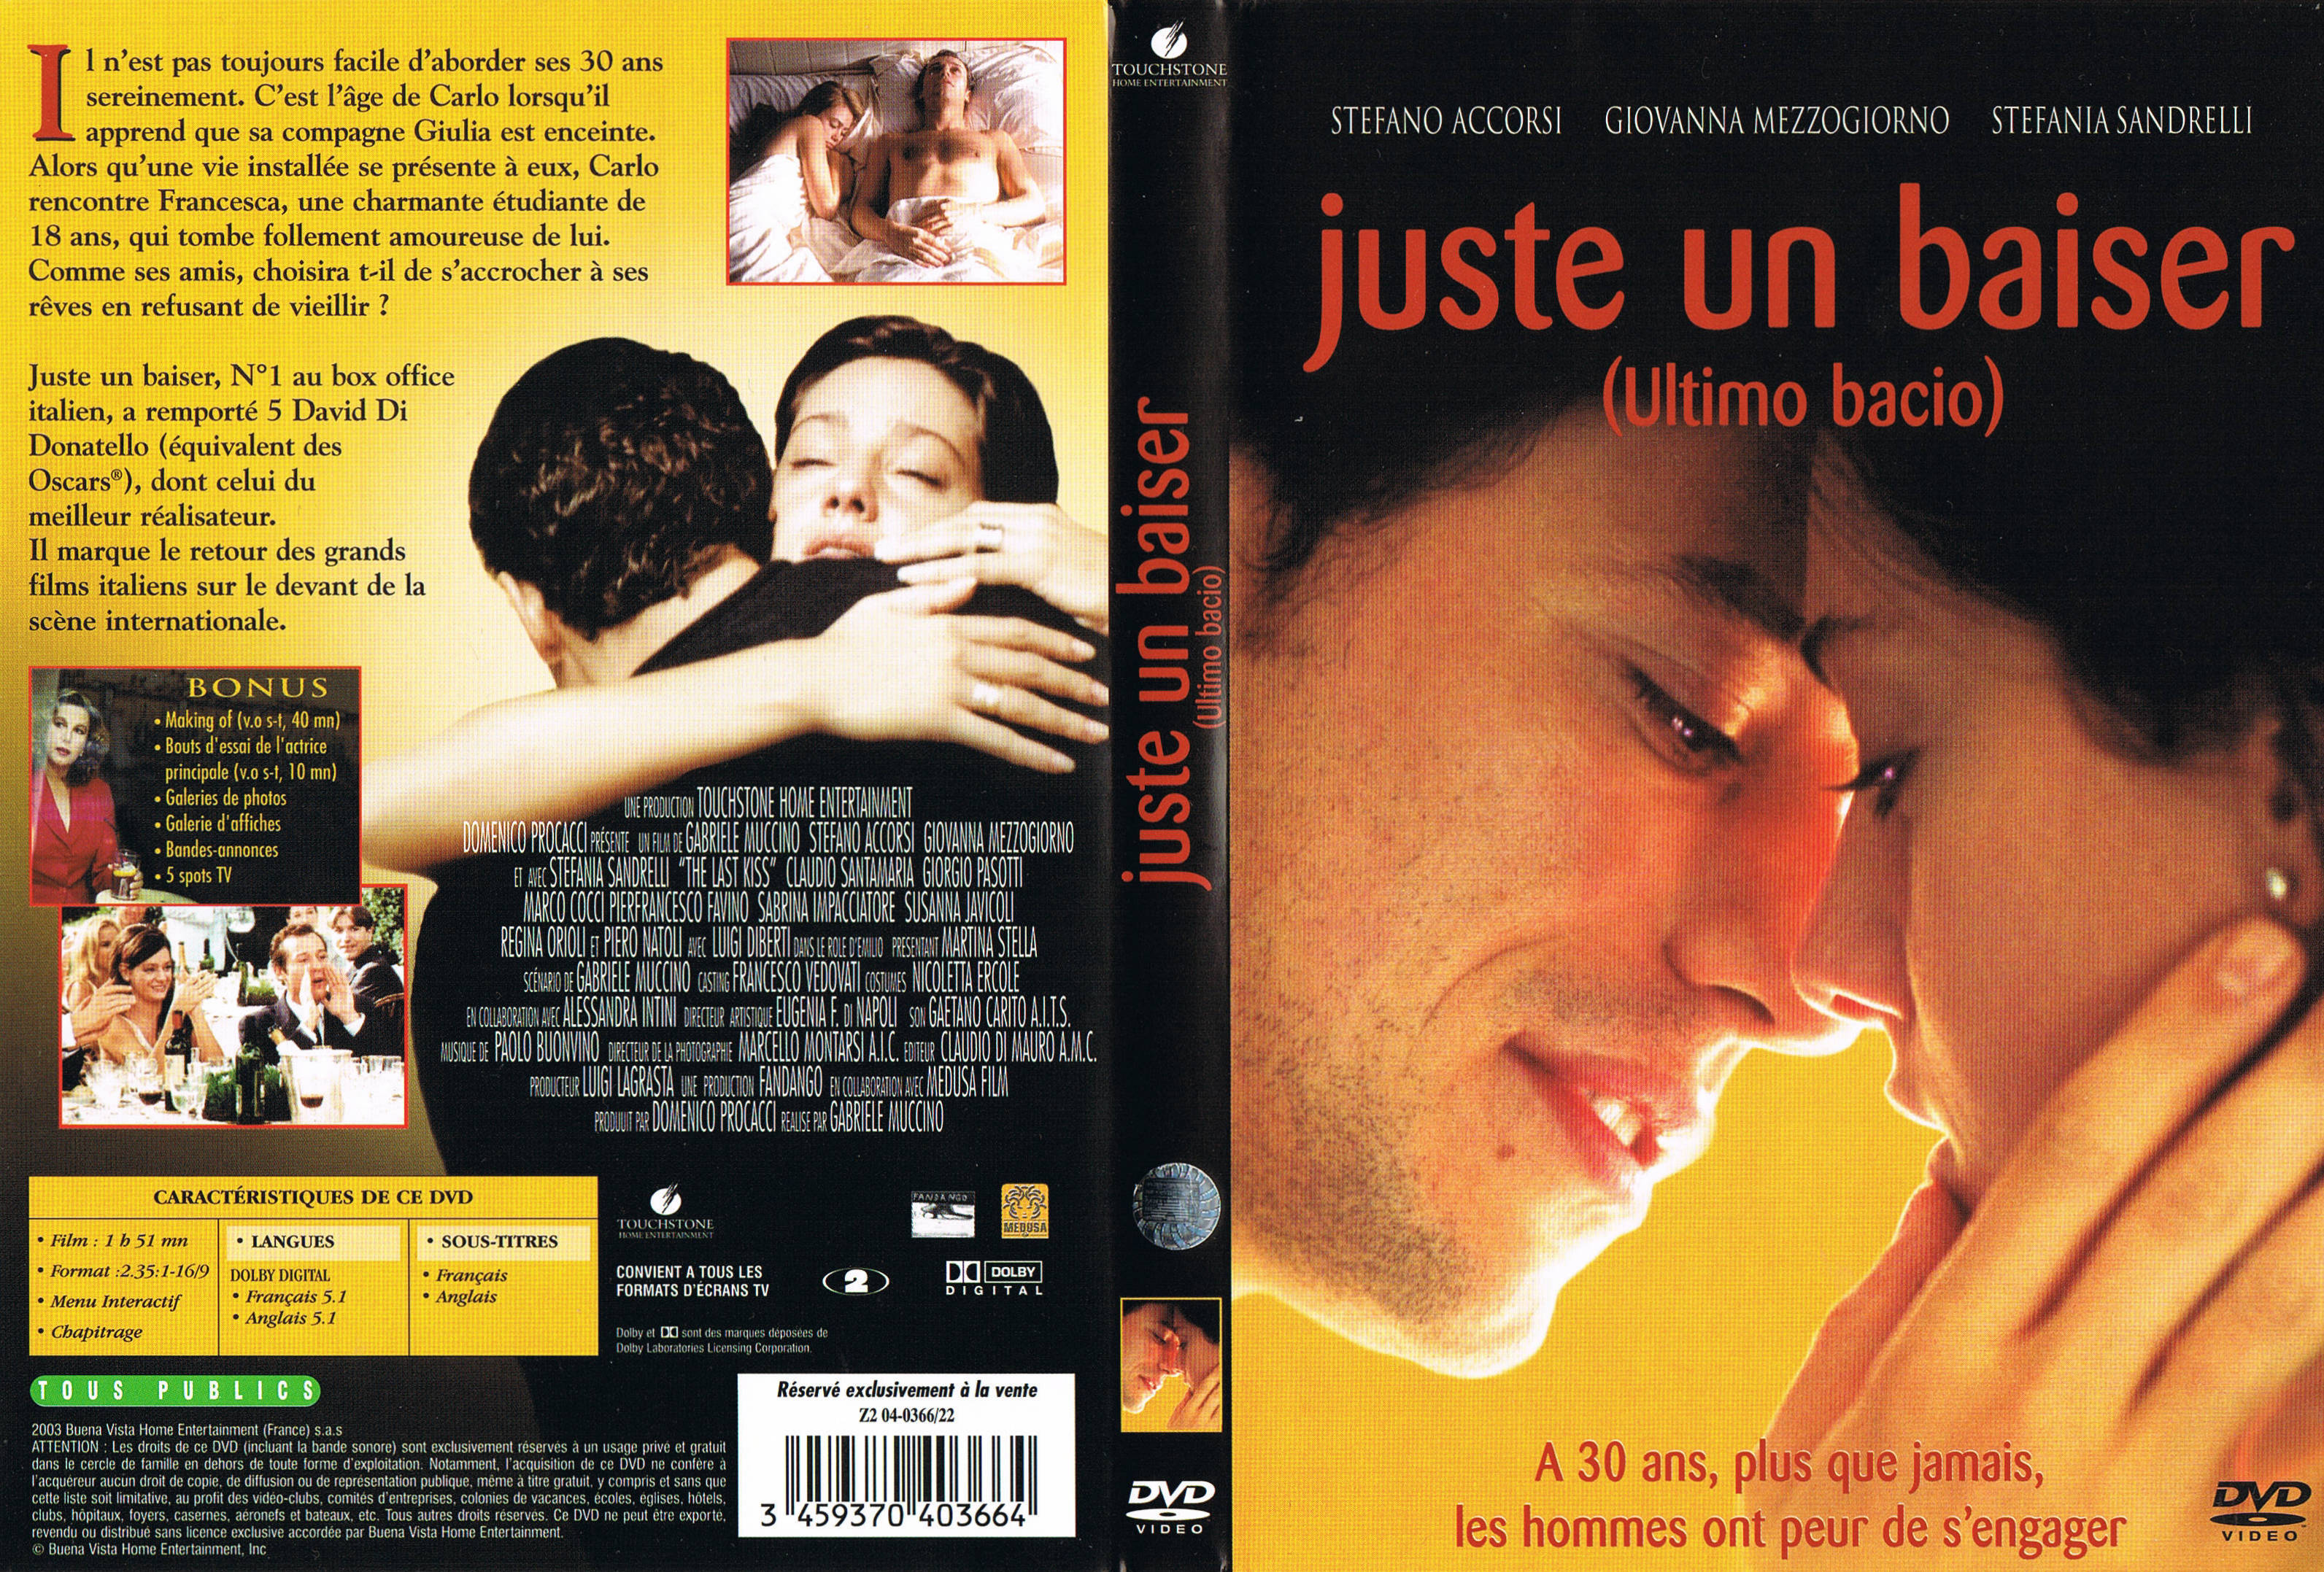 Jaquette DVD Juste un baiser v2